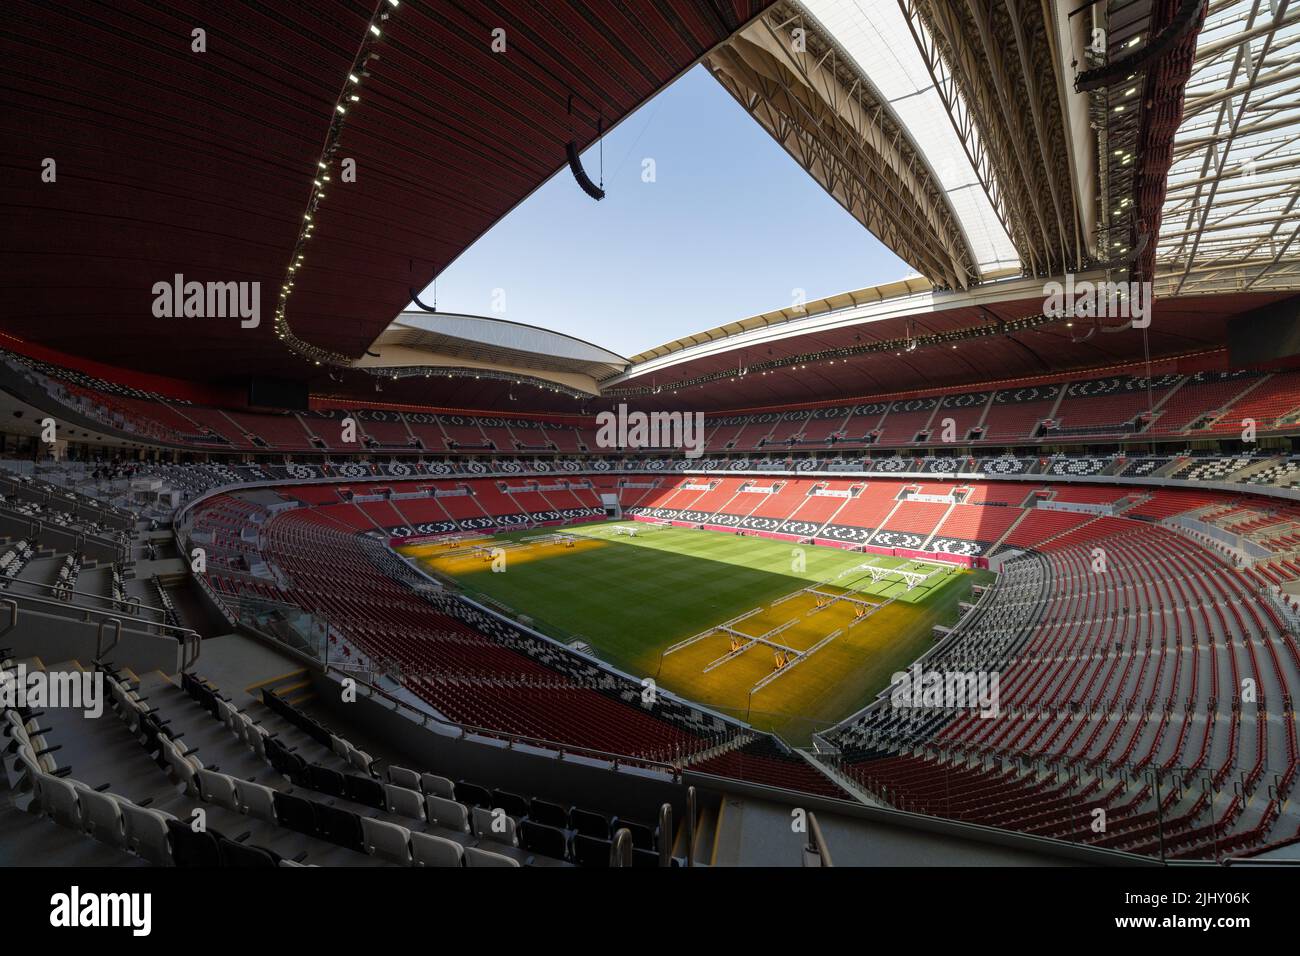 All'interno dello stadio al Bayt di al Khor, Qatar, una delle 8 sedi per la Coppa del mondo FIFA 2022. Foto Stock